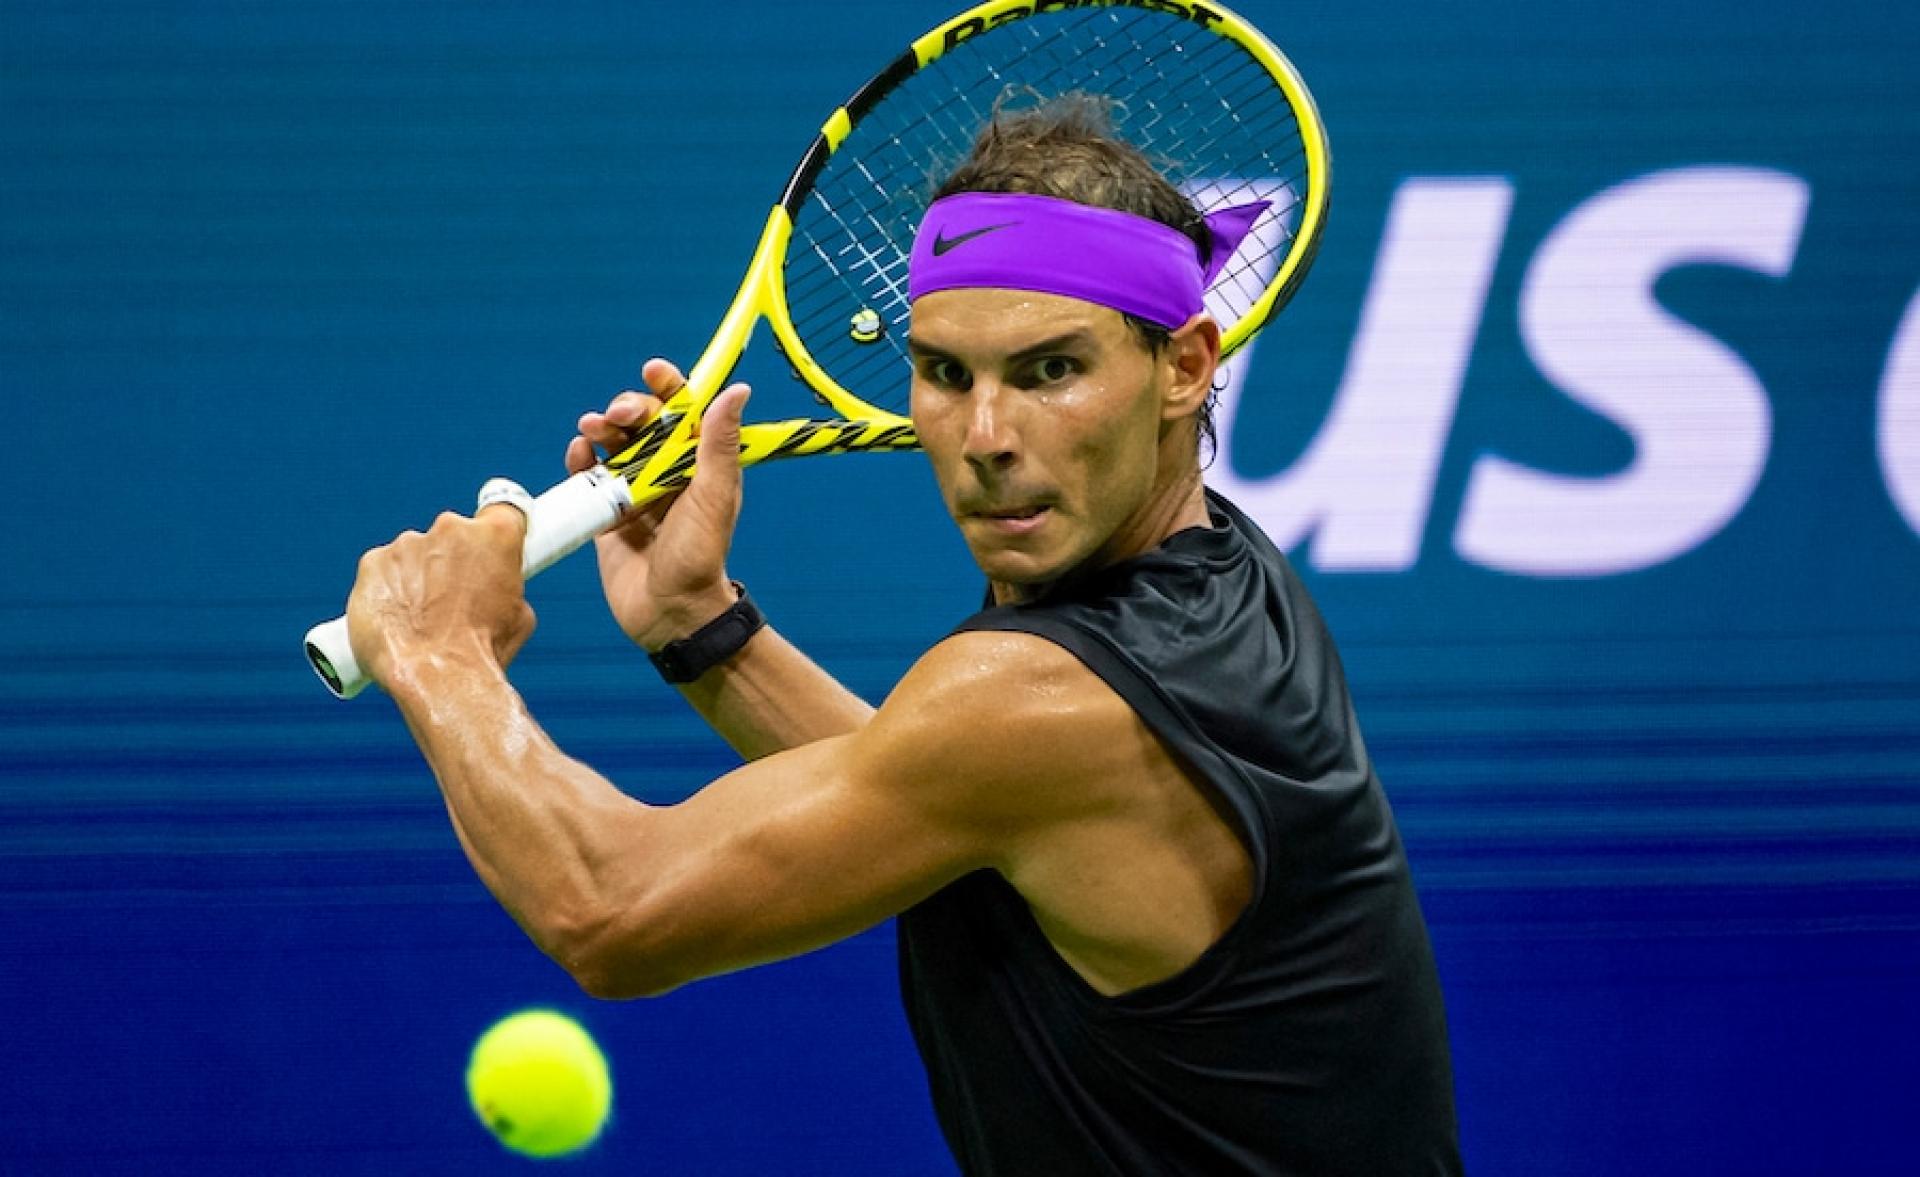 Rafael Nadal se retira del abierto de tenis en Estados Unidos